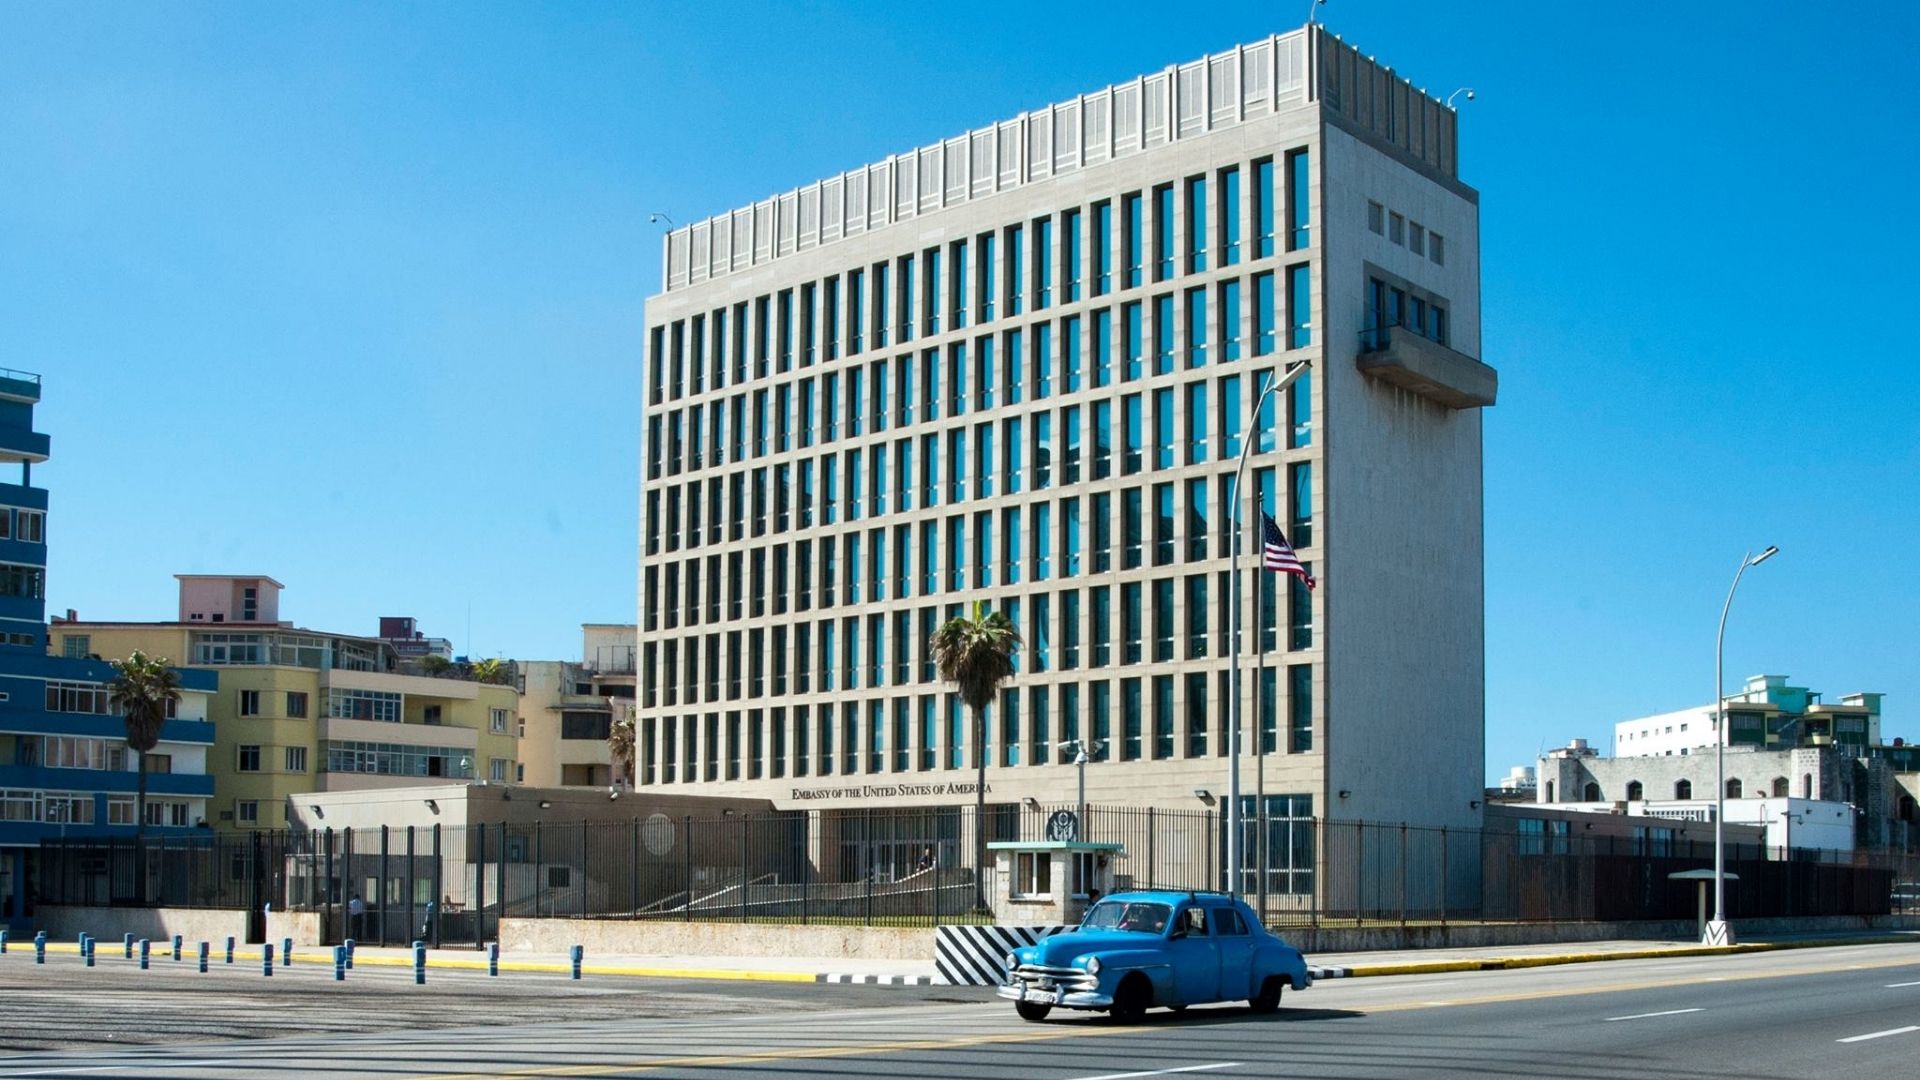 Según Reuters, la administración Biden anunciaría esta semana un plan para aumentar su personal en la embajada de Estados Unidos en La Habana